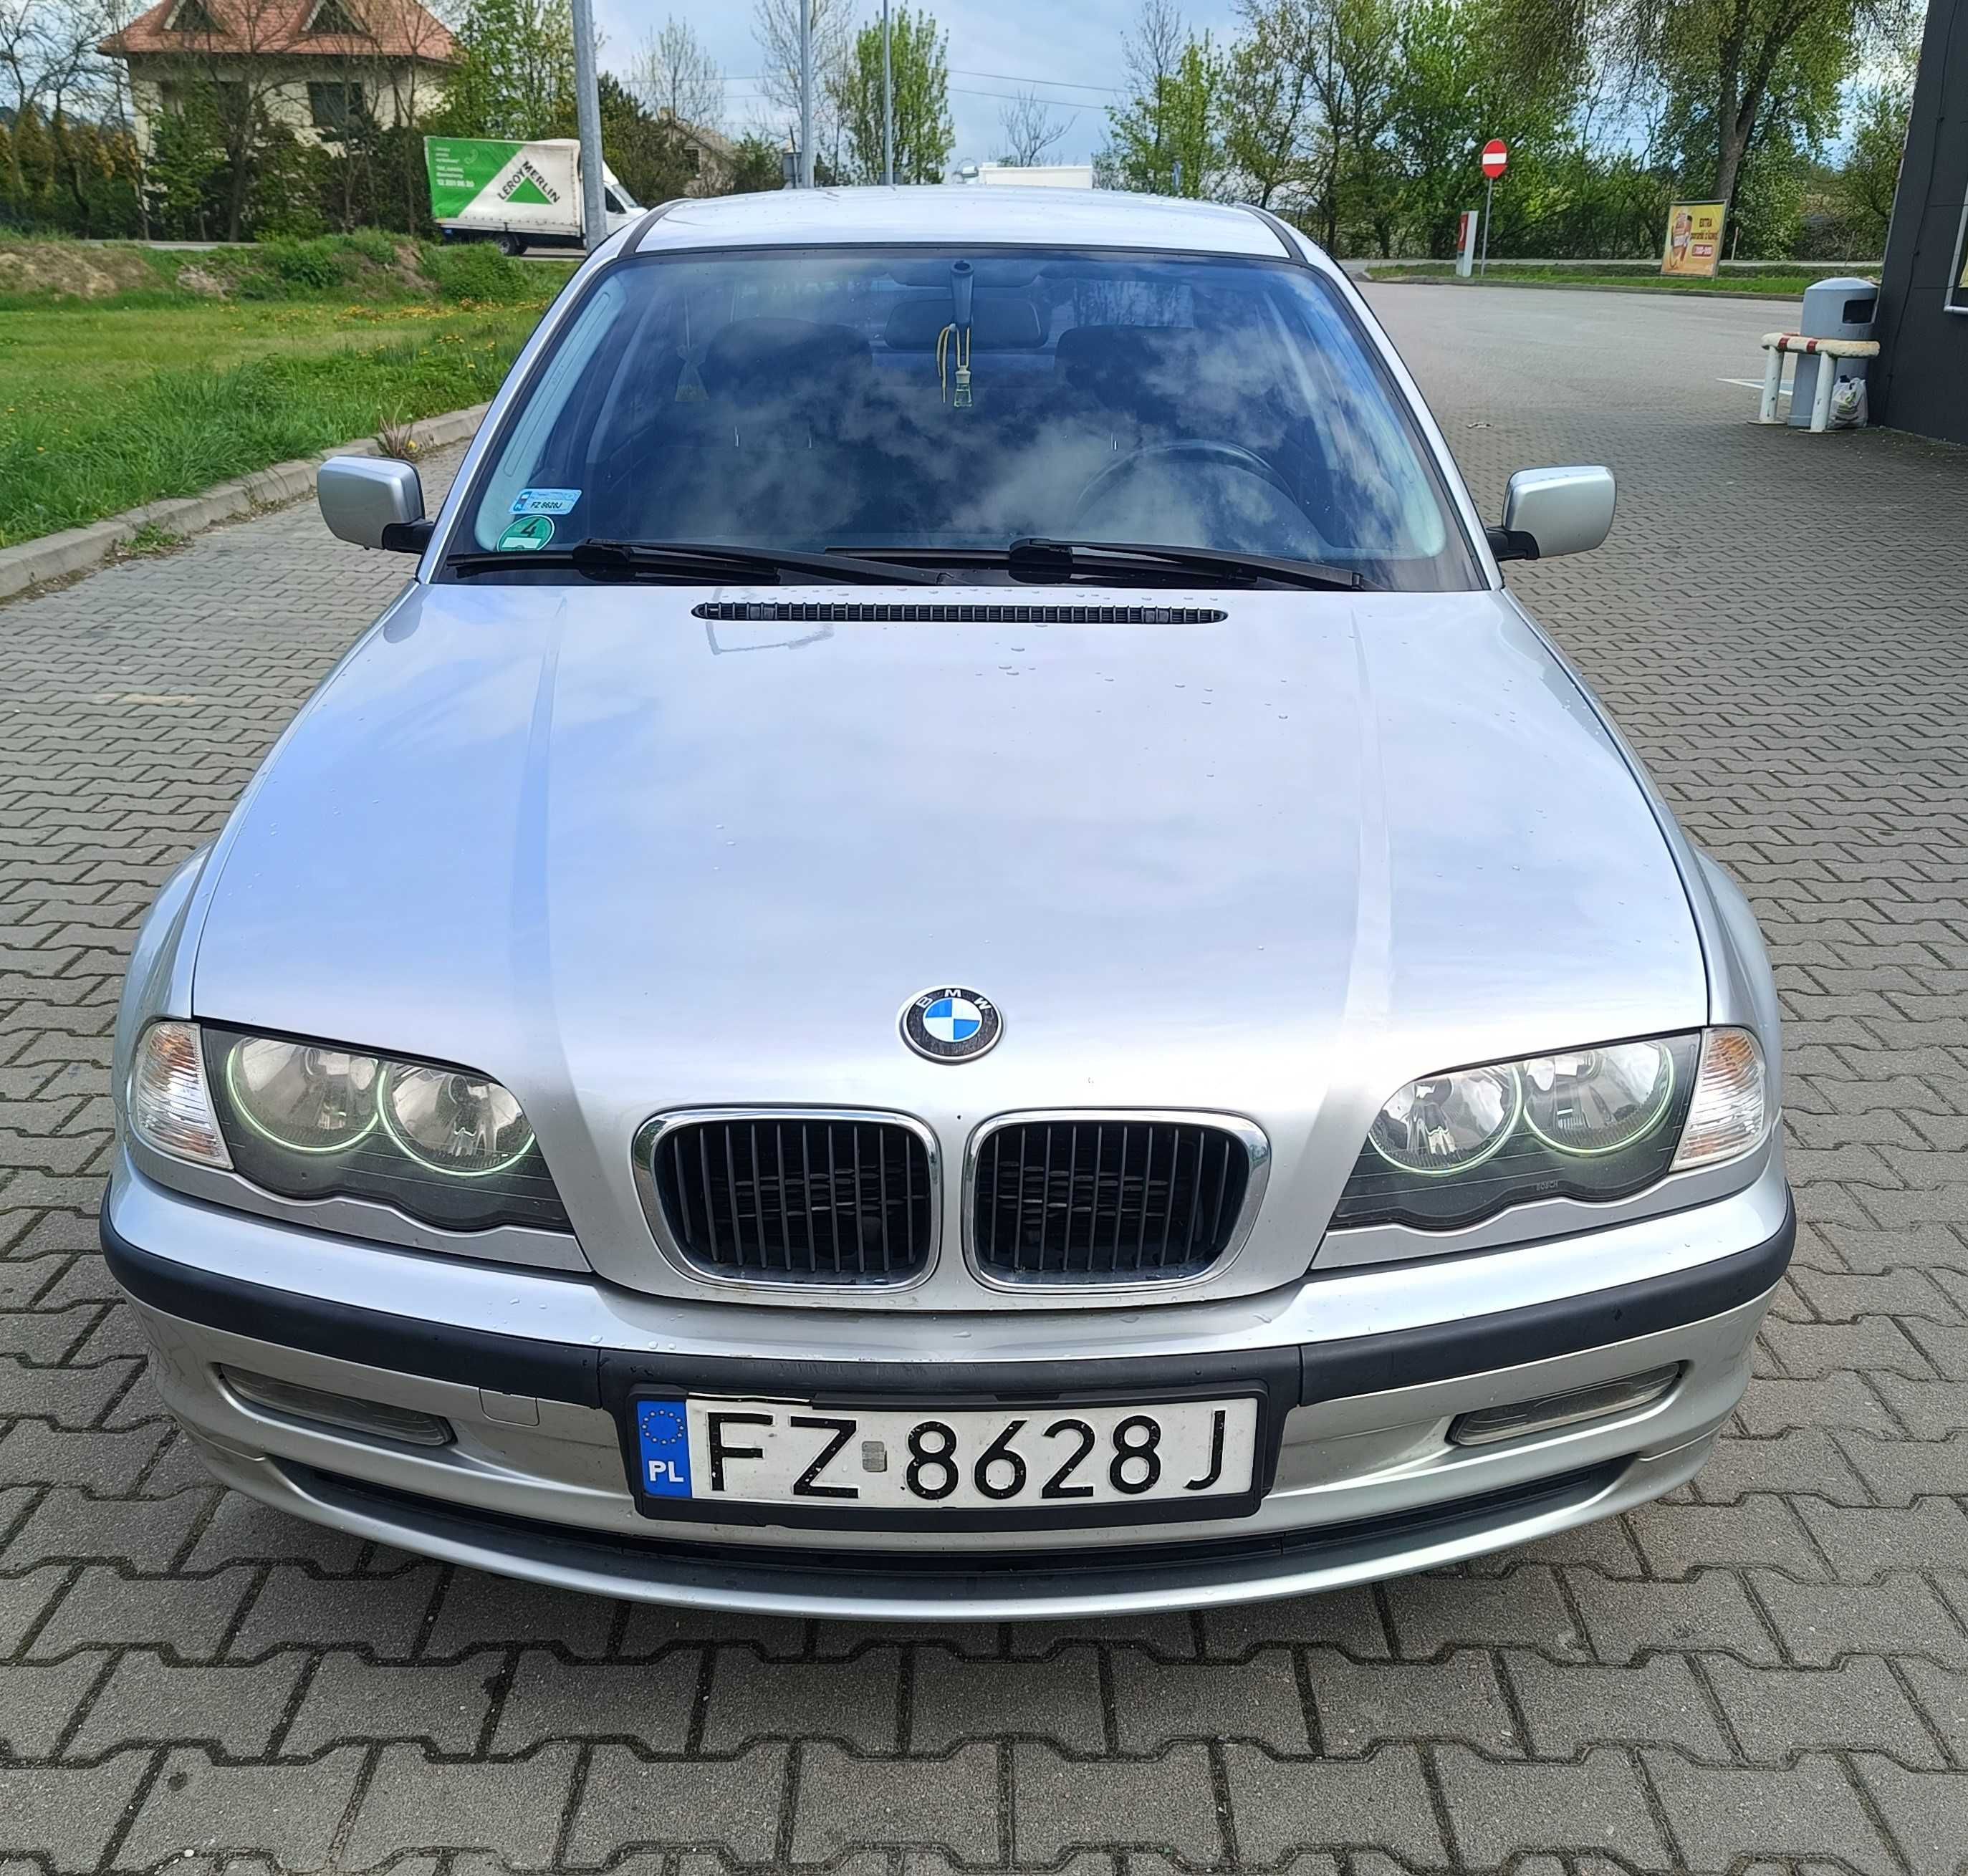 BMW E46, 1.9 benzyna, 222 tyś km